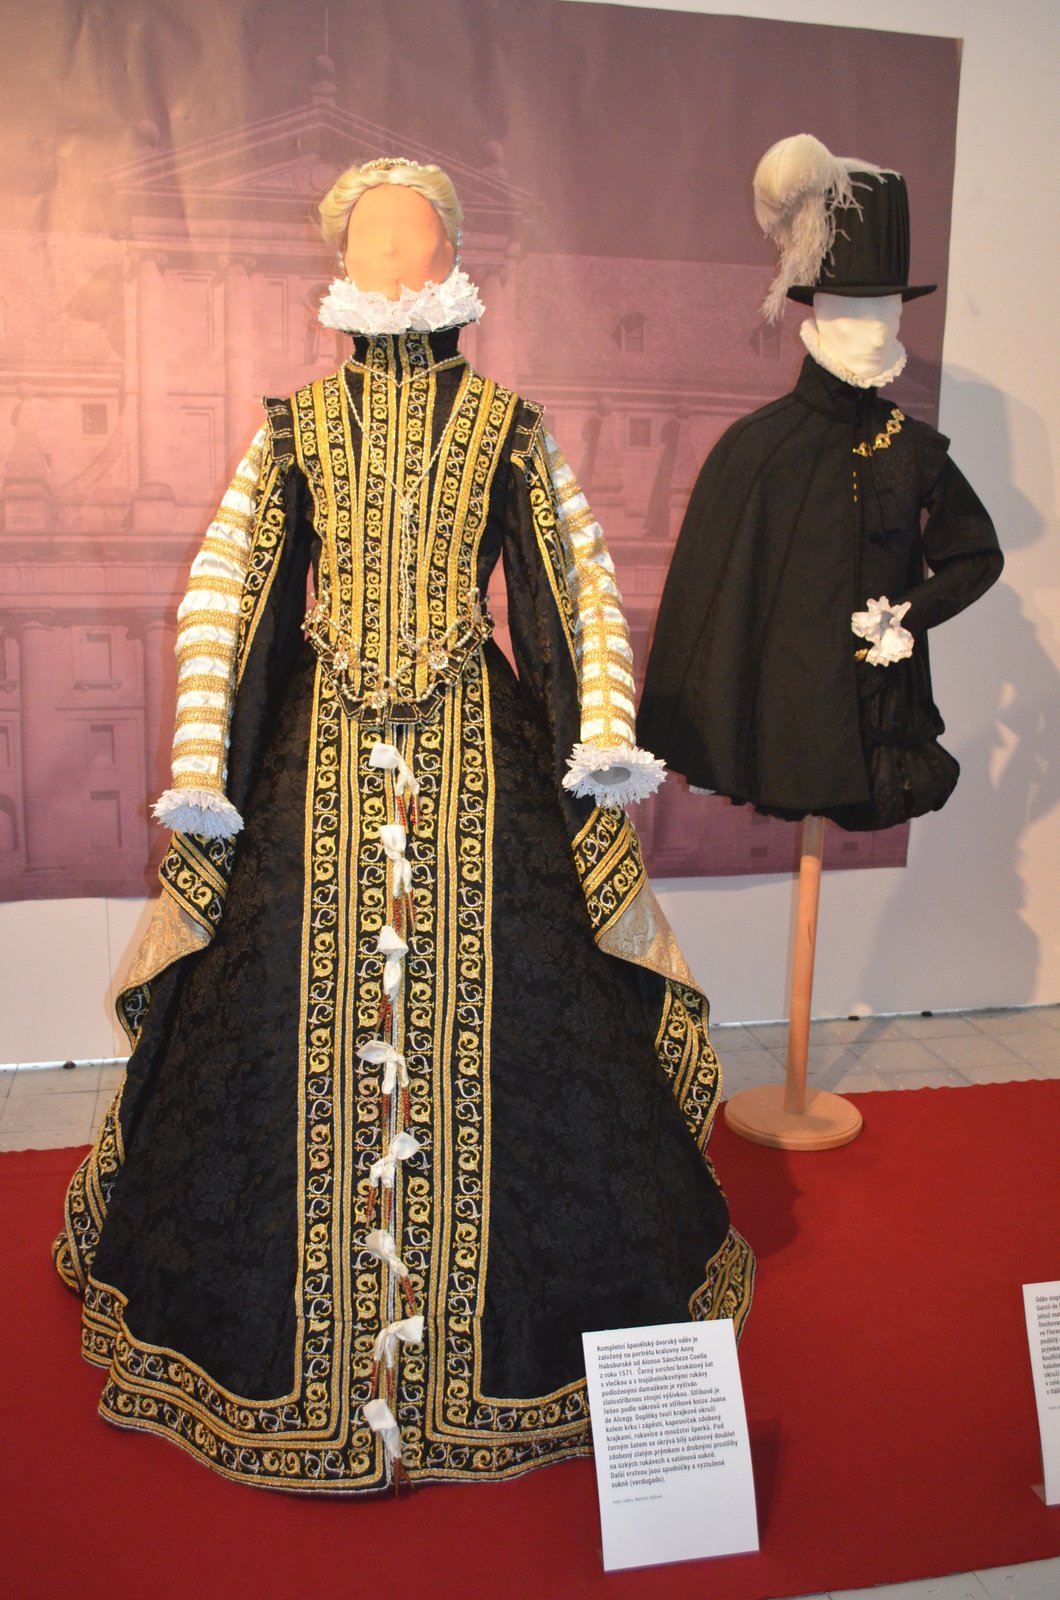 V expozici je i unikátní dvorský oděv královny Anny Habsburské z roku 1571.  Černý brokátový šat s vlečkou a trojúhelníkovými rukávy podloženými damaškem je ozdoben zlatostříbrnou strojní výšivkou.